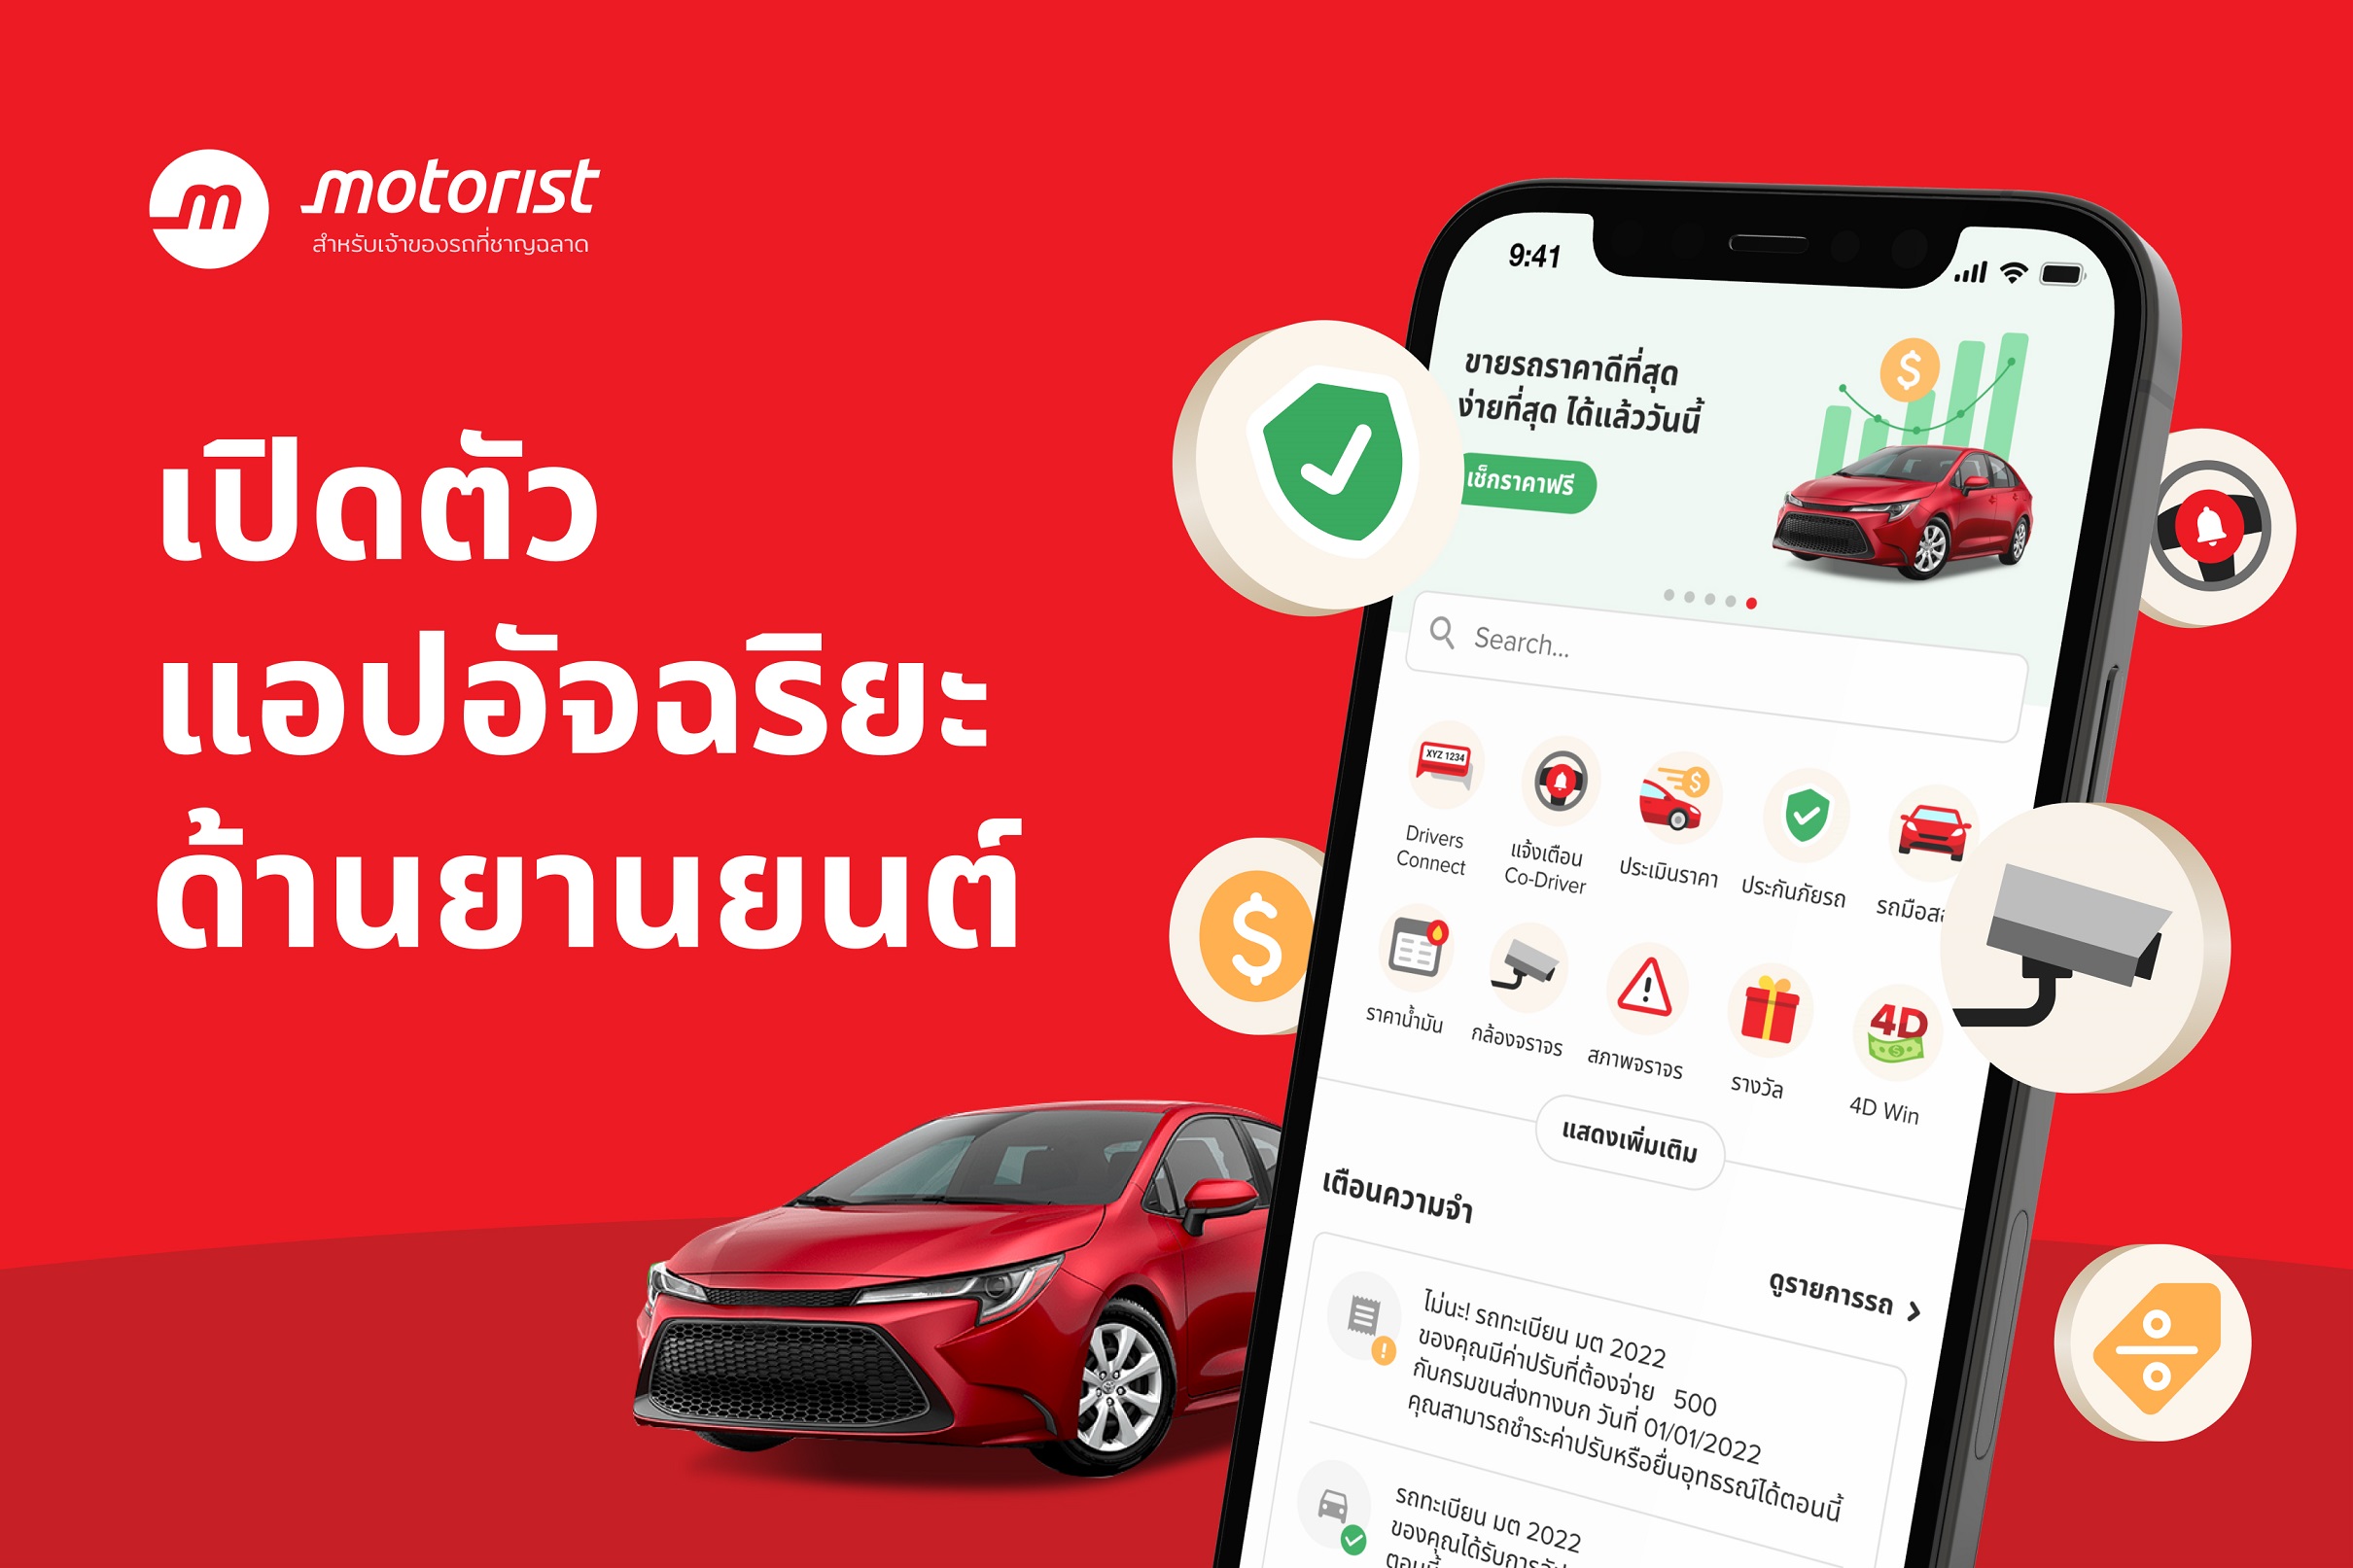 Motorist Thailand เปิดตัว Motorist สุดยอดแอปจัดการรถ แอปอัจฉริยะสำหรับเจ้าของรถ